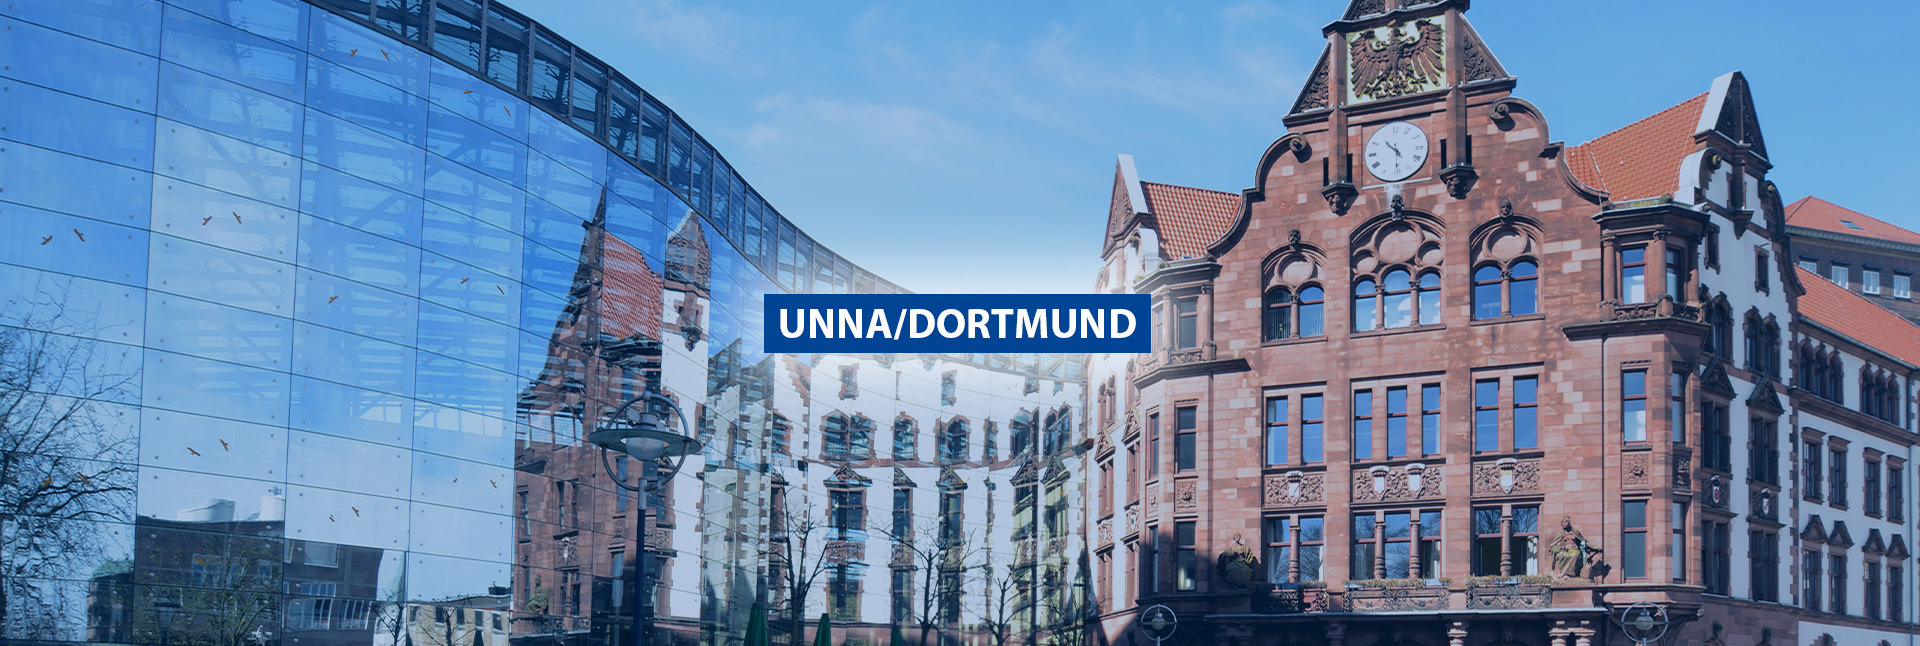 Panorama Unna/Dortmund